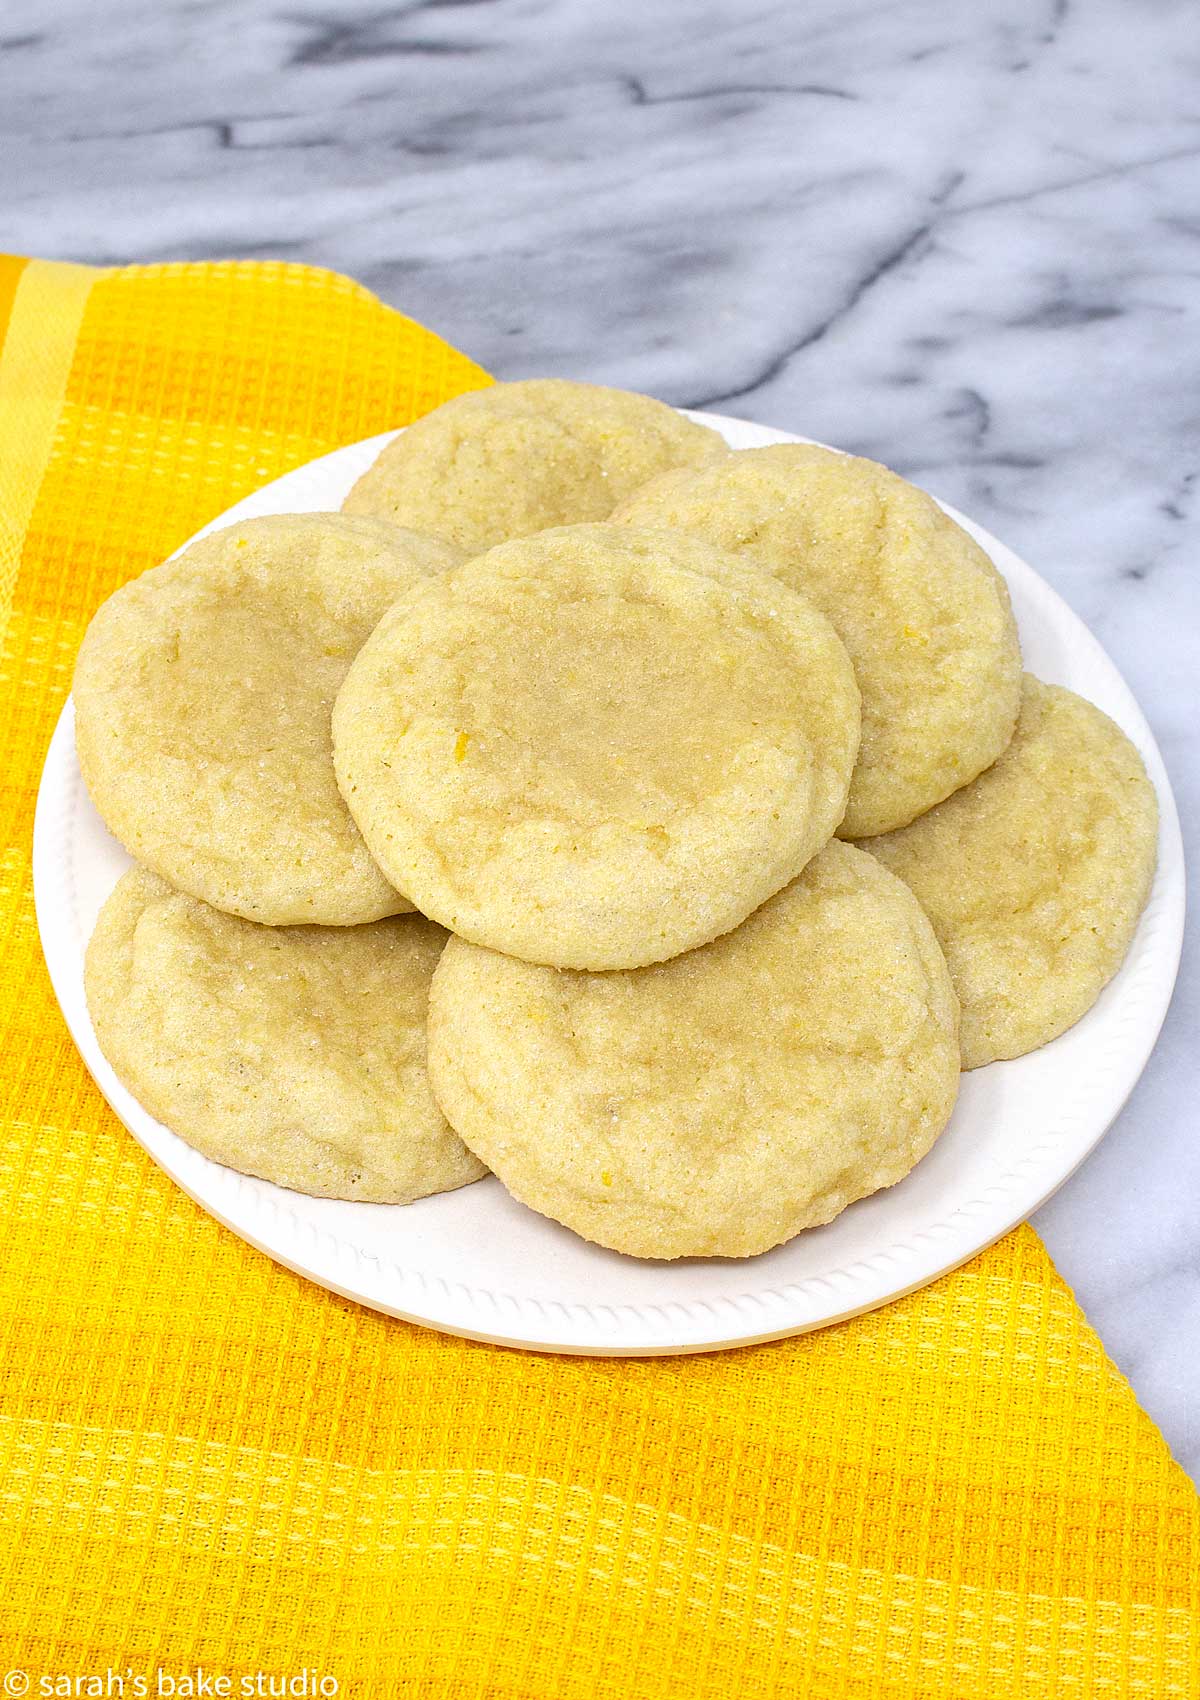 Chewy Lemon Sugar Cookies - deliciously simple sugar cookies with lemon extract, lemon juice, and lemon zest, making these soft and chewy lemon sugar cookies refreshingly lemon.